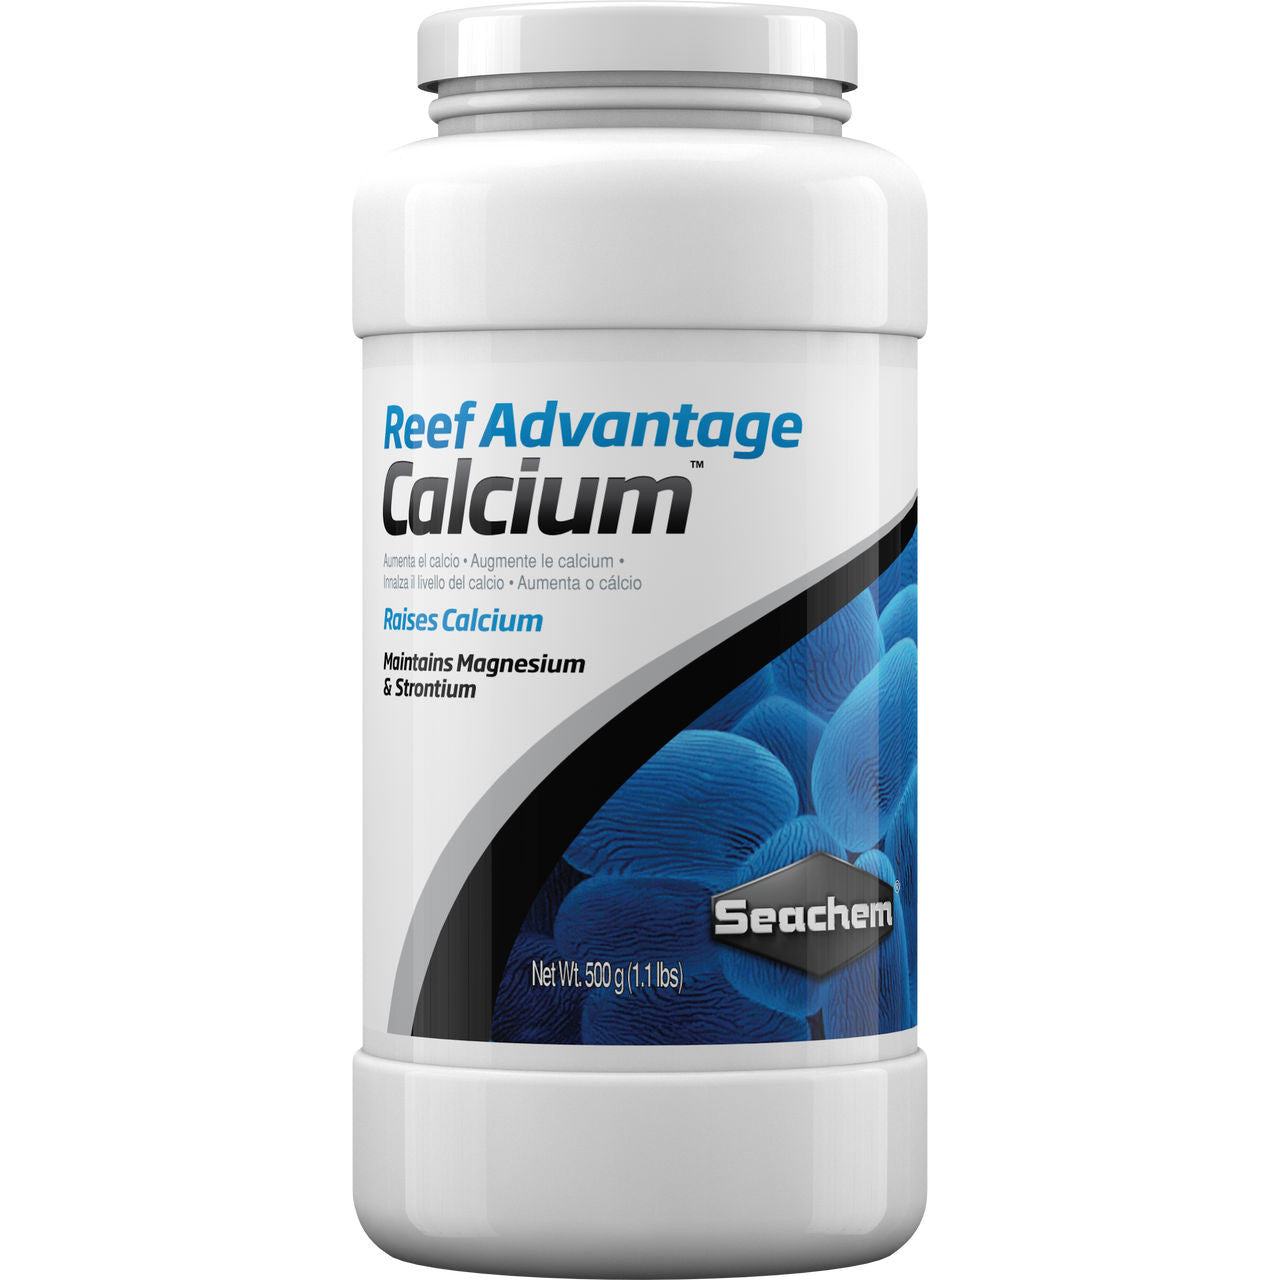 Reef Advantage Calcium™ 500g.